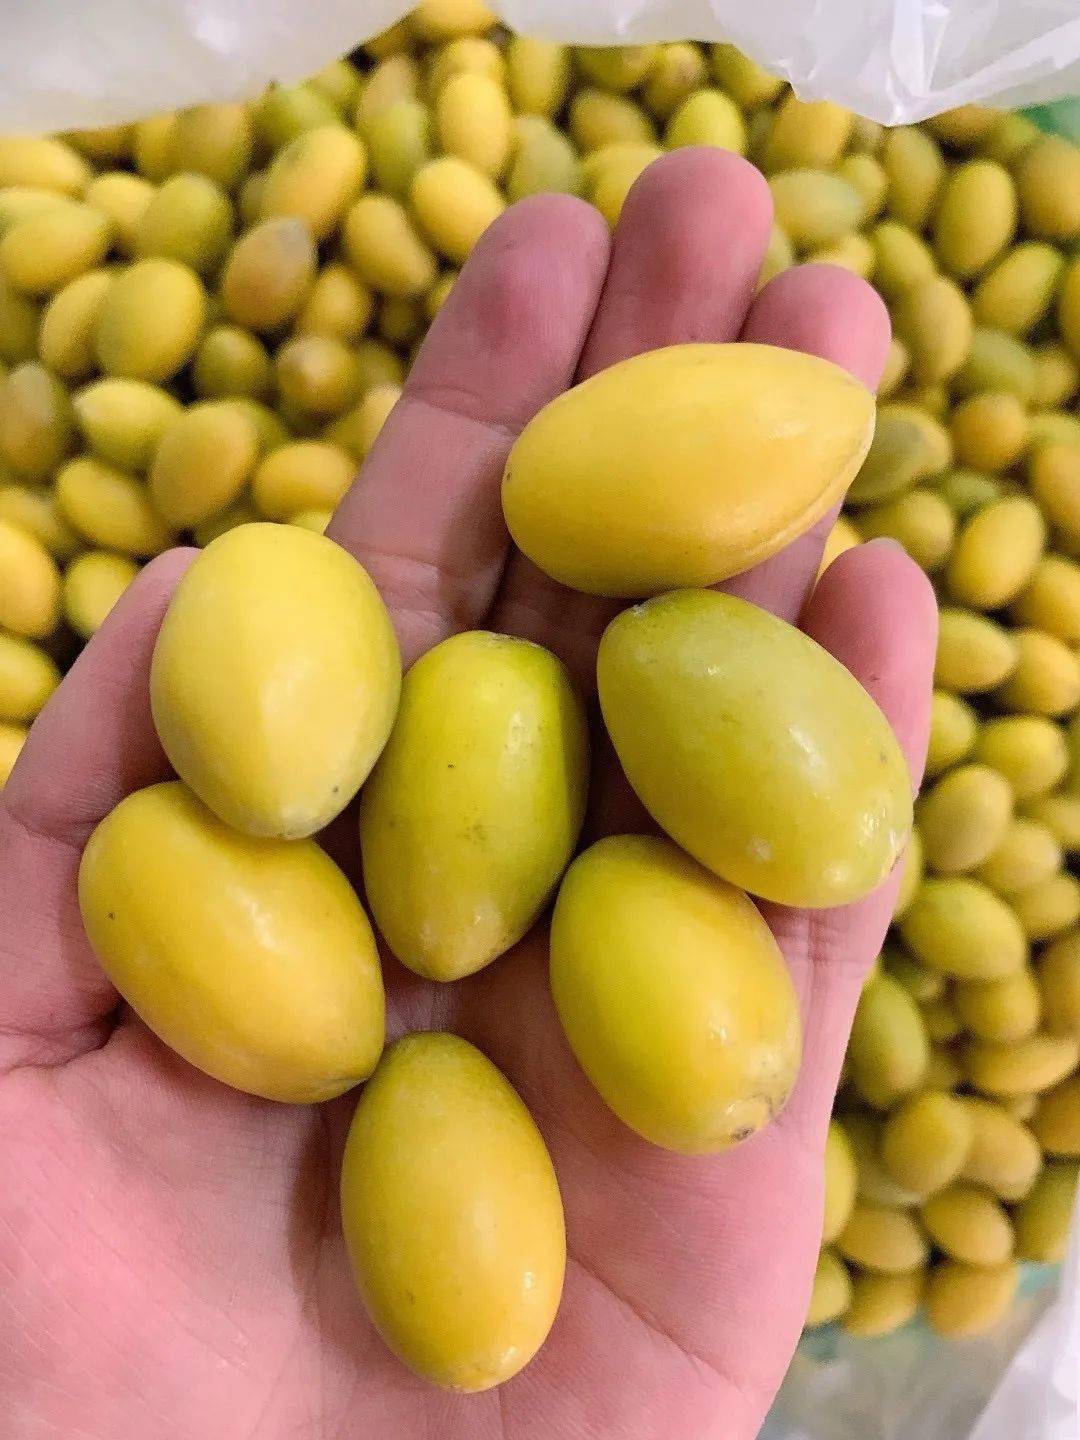 潮汕最贵的橄榄图片